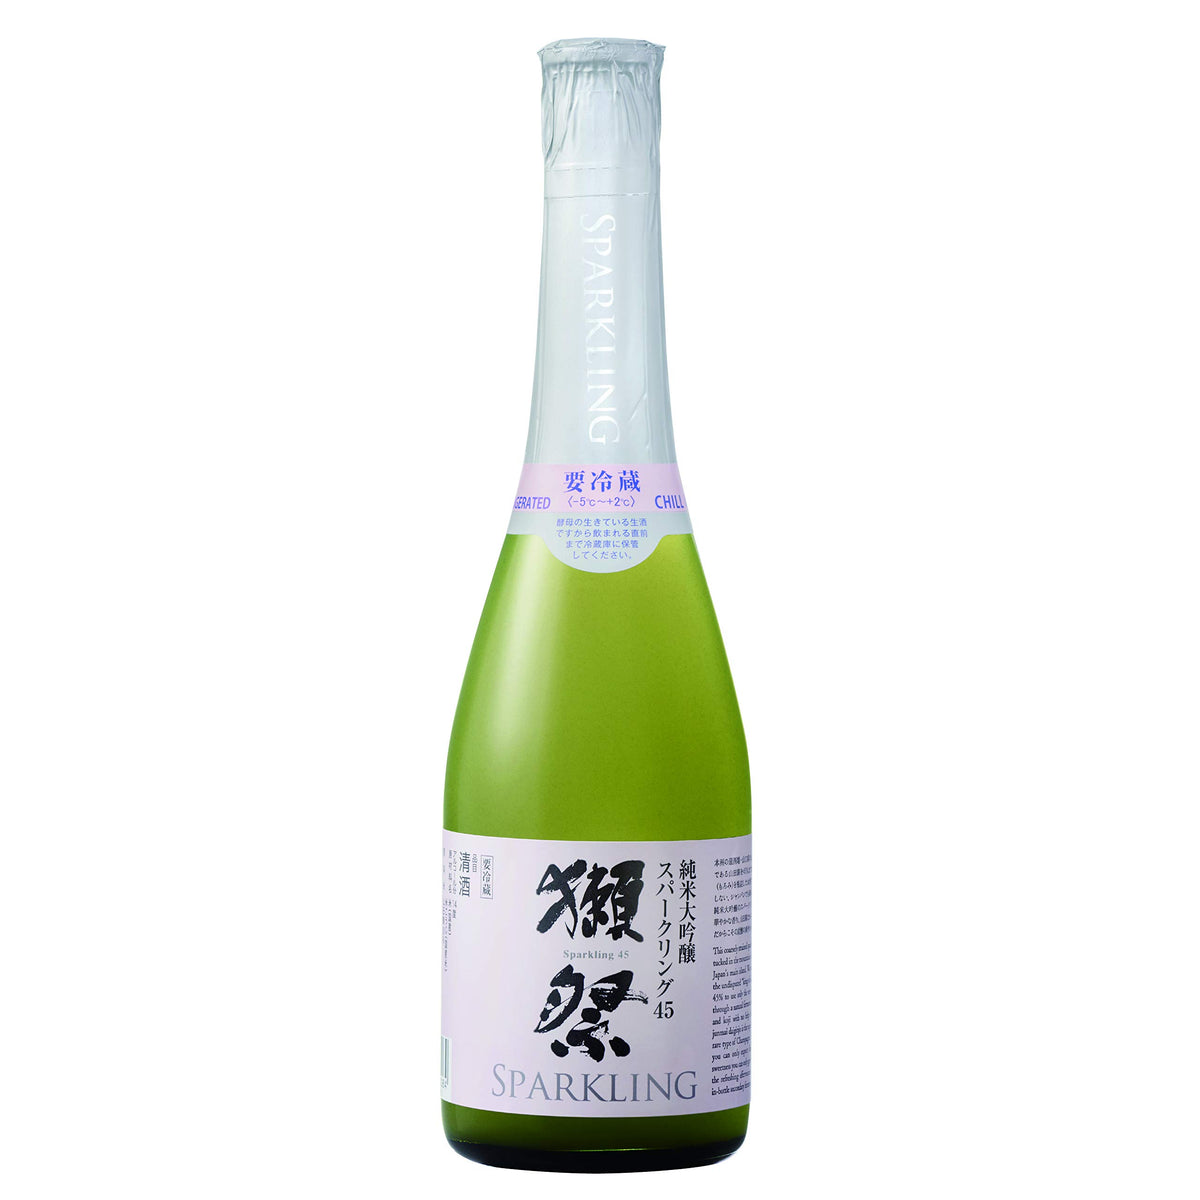 Dassai “45” Sparkling Sake